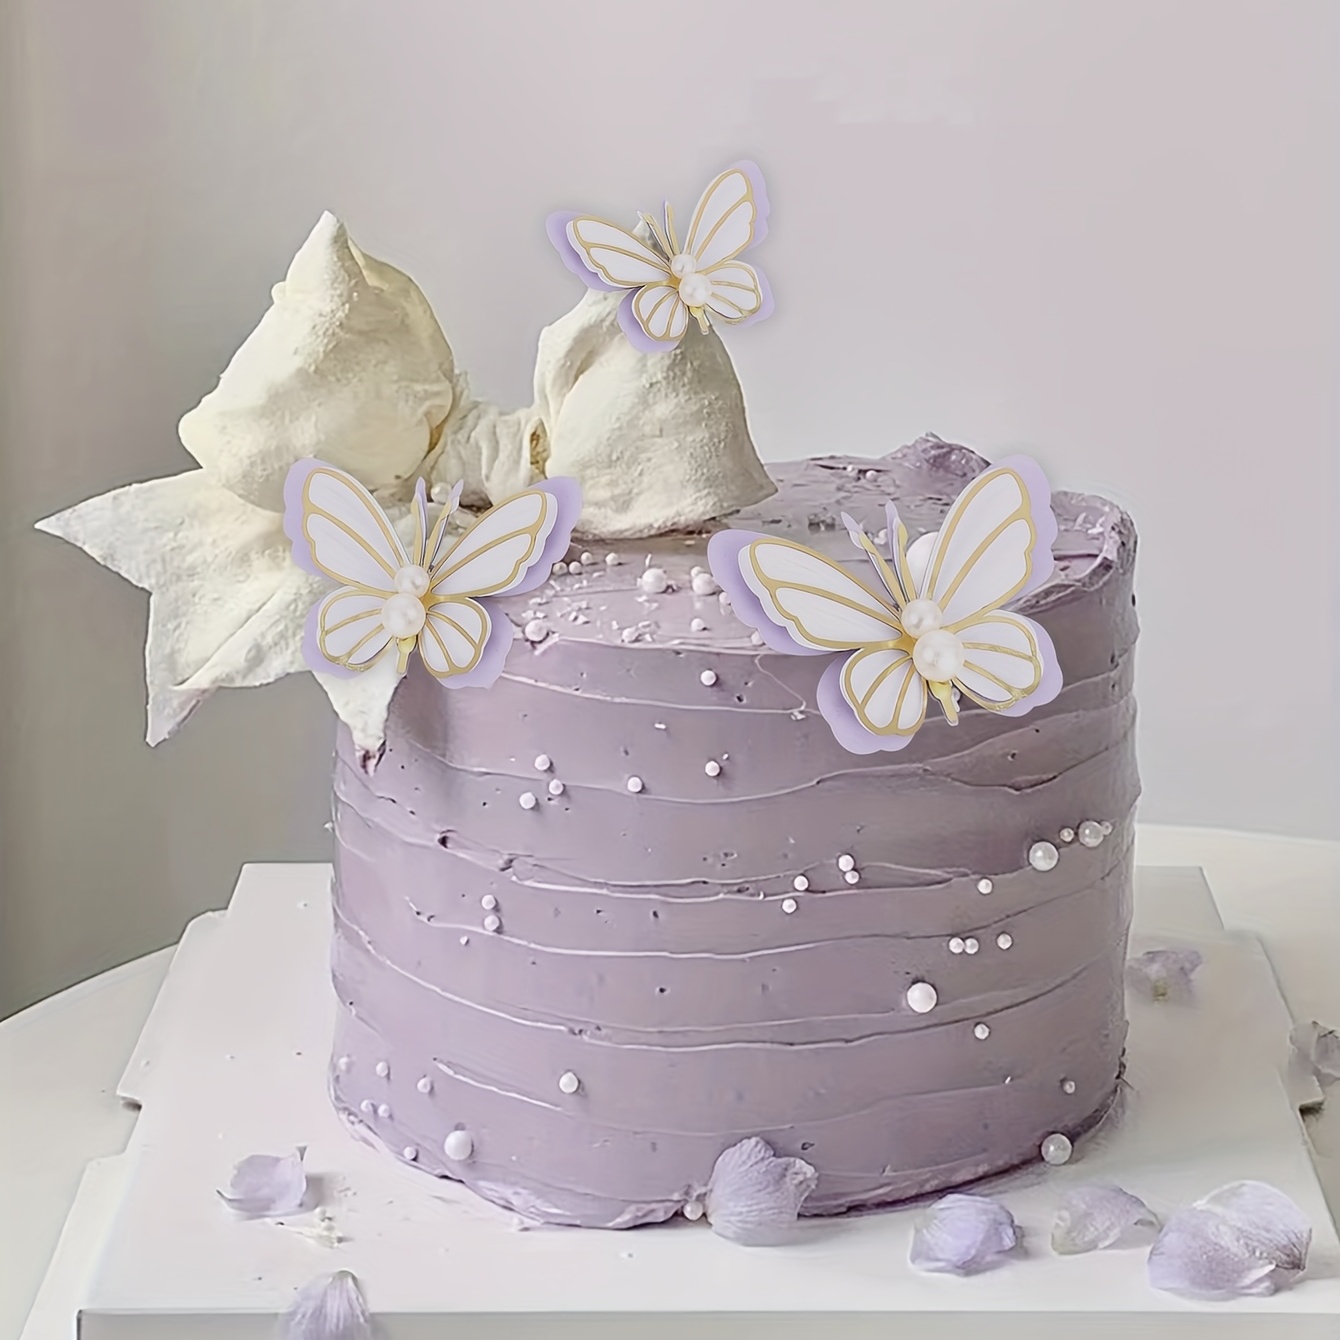 Chef de pastelaria decorando um bolo de aniversário fosco roxo com  cobertura de texto polvilha pérolas e borboletas